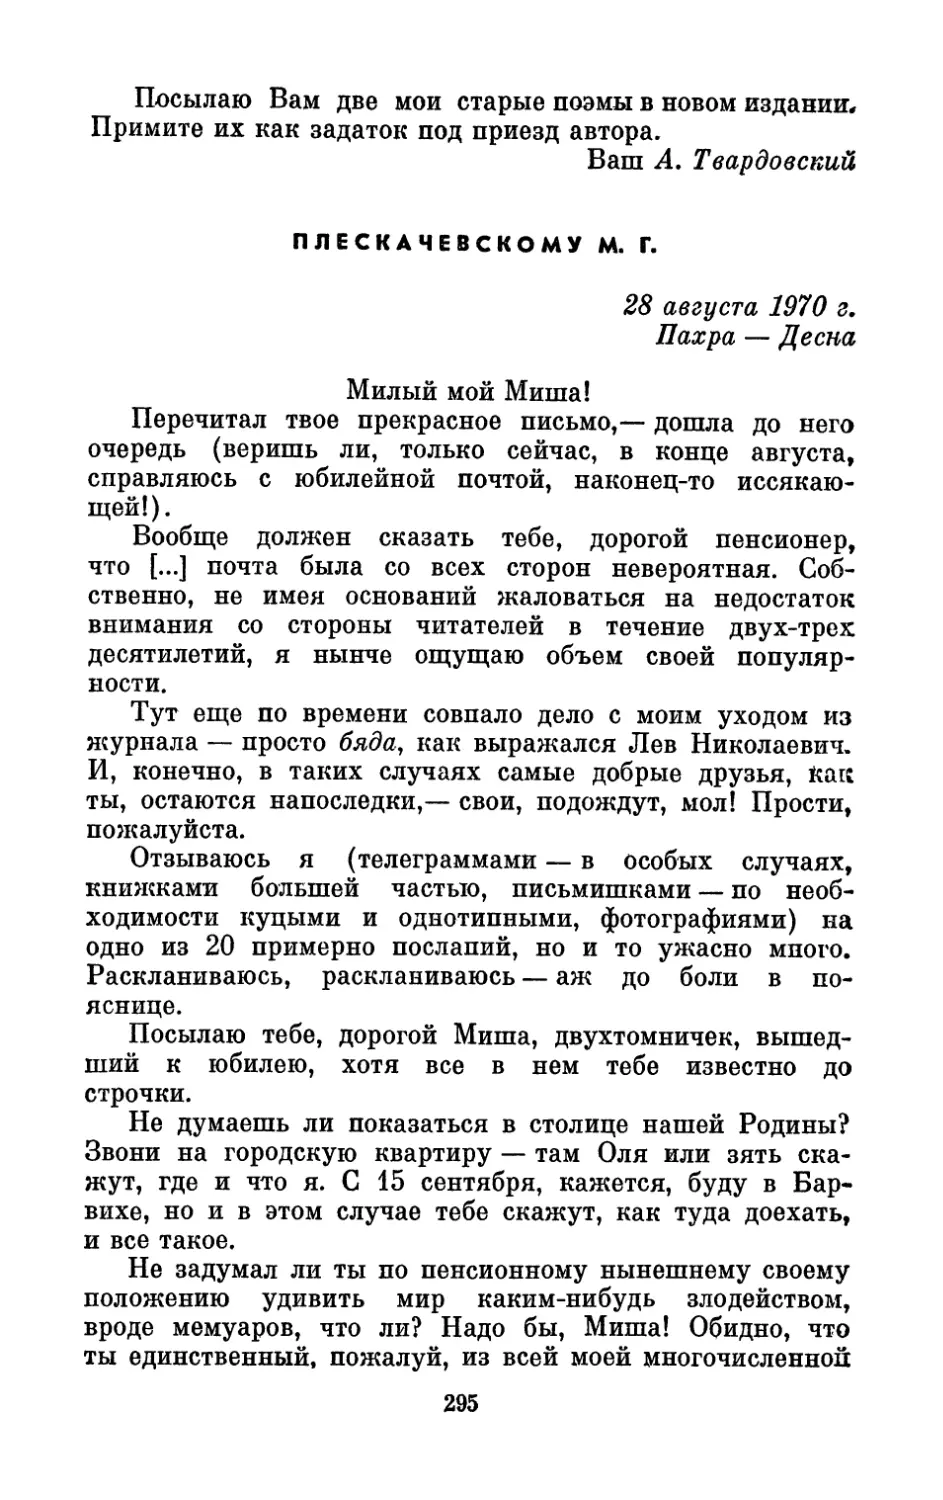 Плескачевскому М. Г., 28 августа 1970 г.